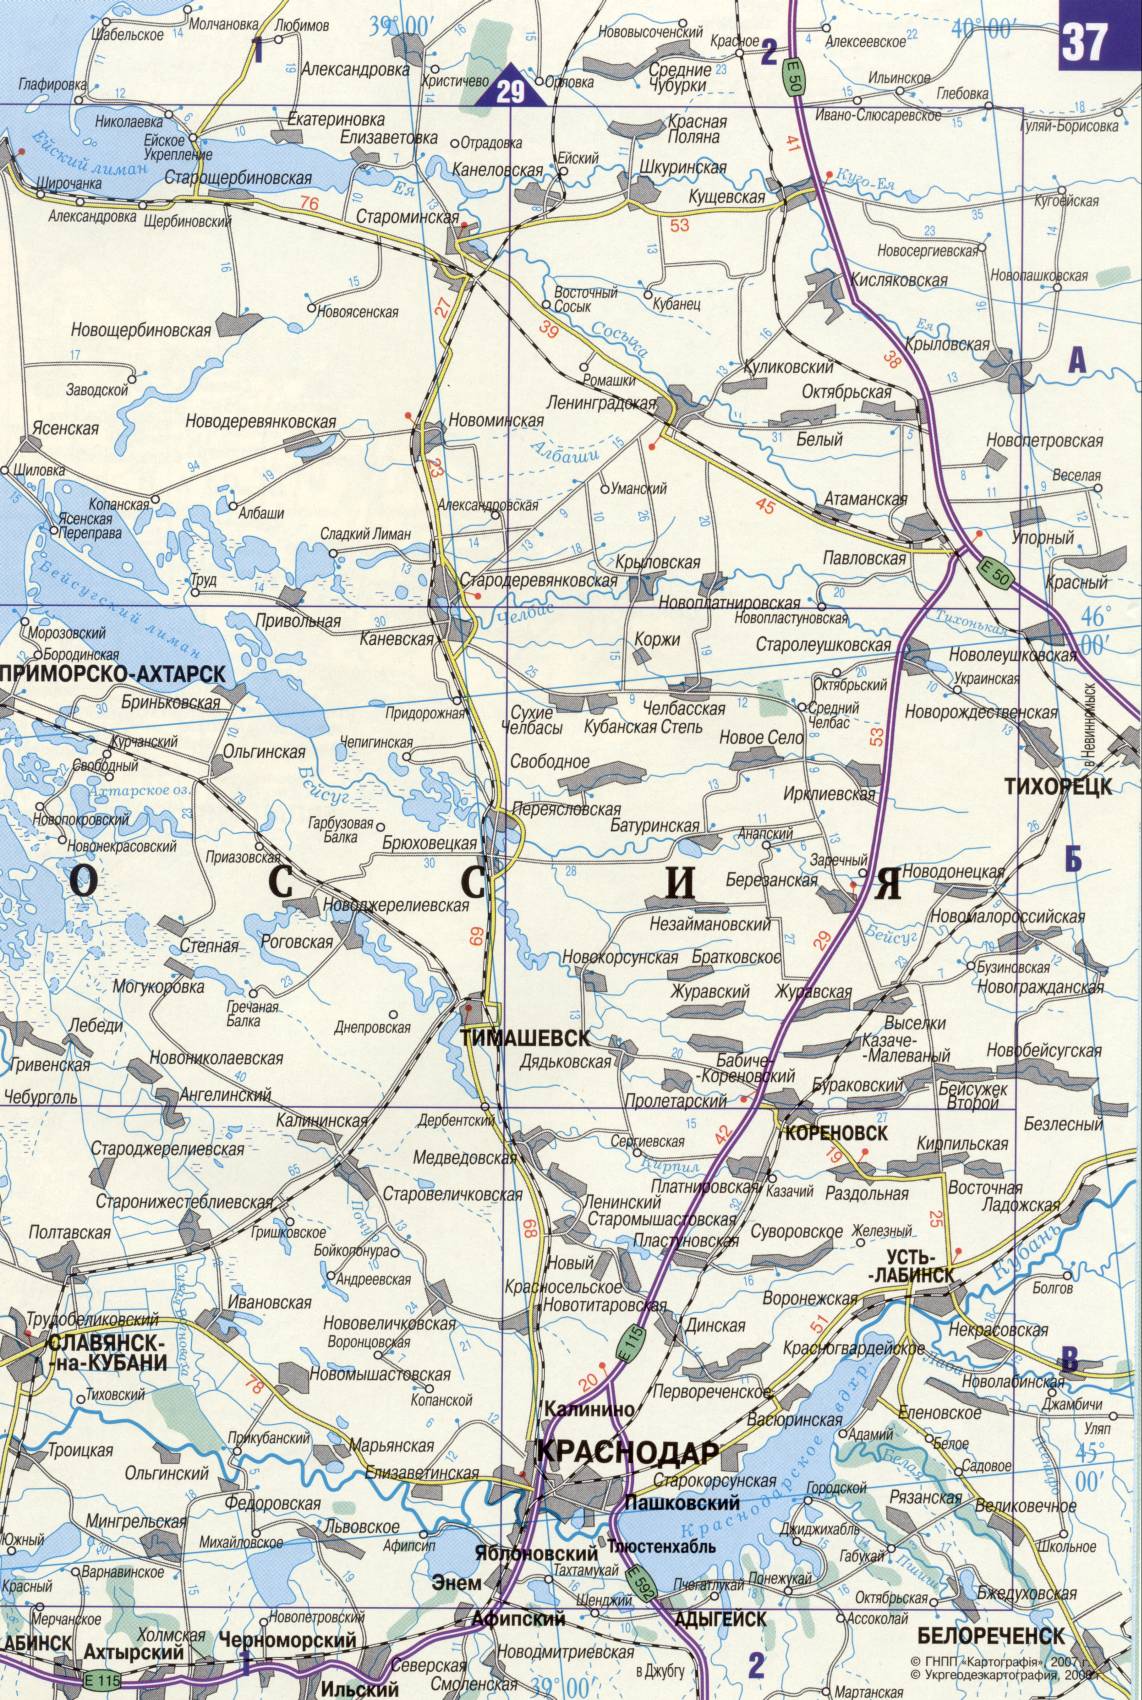 Карта Украины. Подробная карта дорог Украина из автомобильног атласа. скачать бесплатно, J3